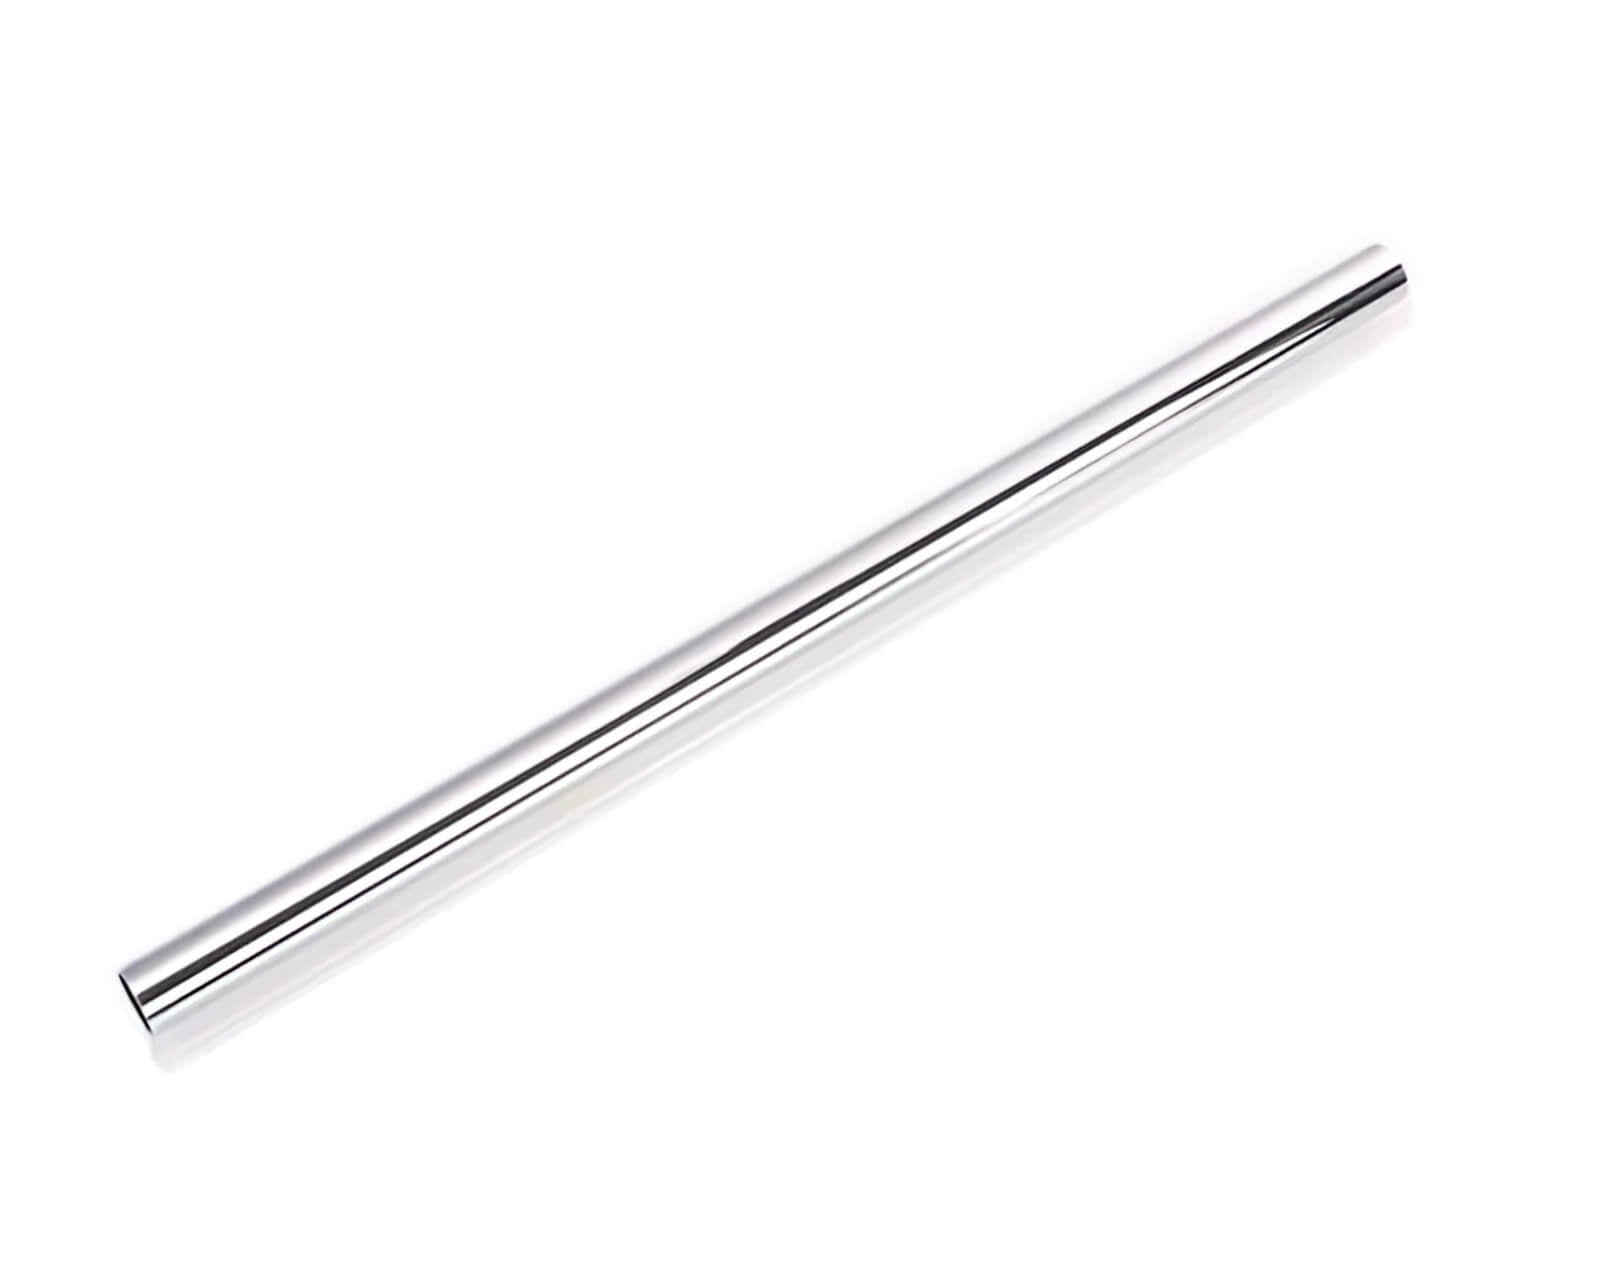 Bykski Metal Rigid Tubing - Electroplated Brass - 14mm OD - 300mm - PrimoChill - KEEPING IT COOL